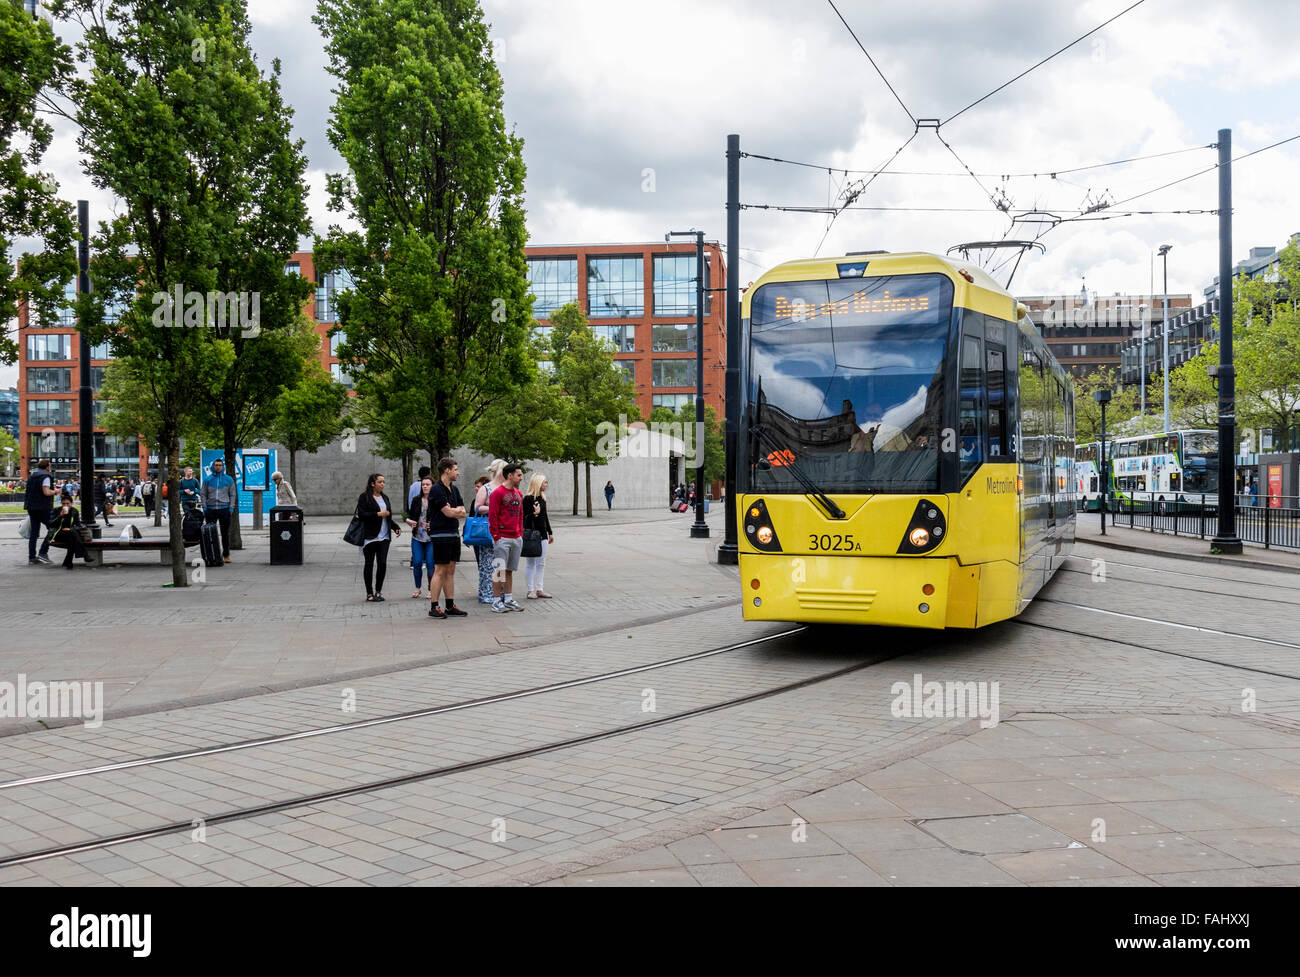 Personnes et de tramway dans le centre-ville de Manchester UK Banque D'Images